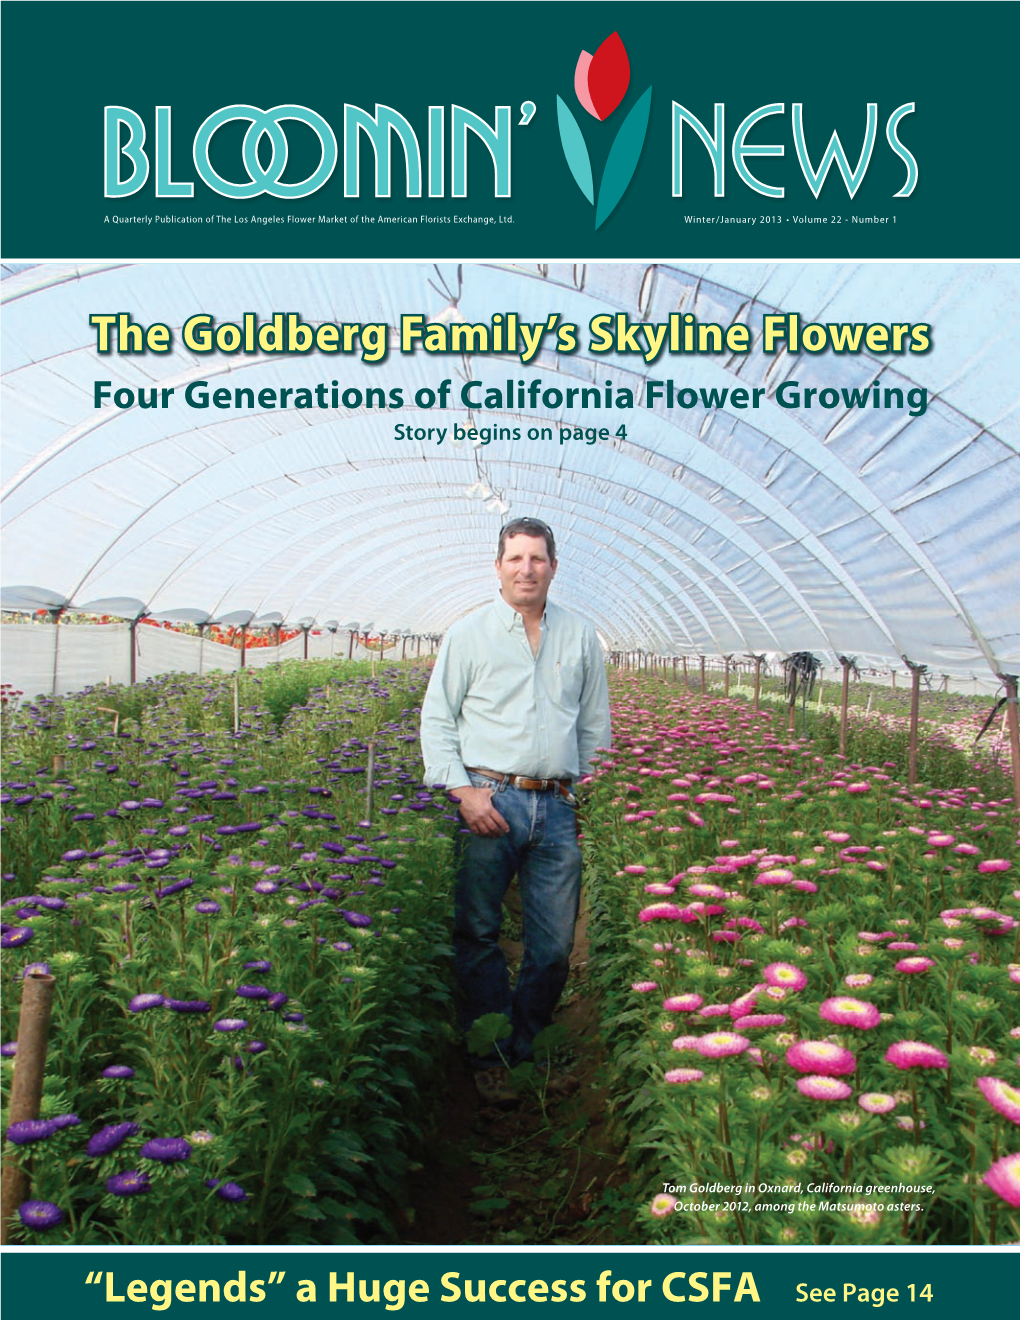 The Goldberg Family's Skyline Flowers